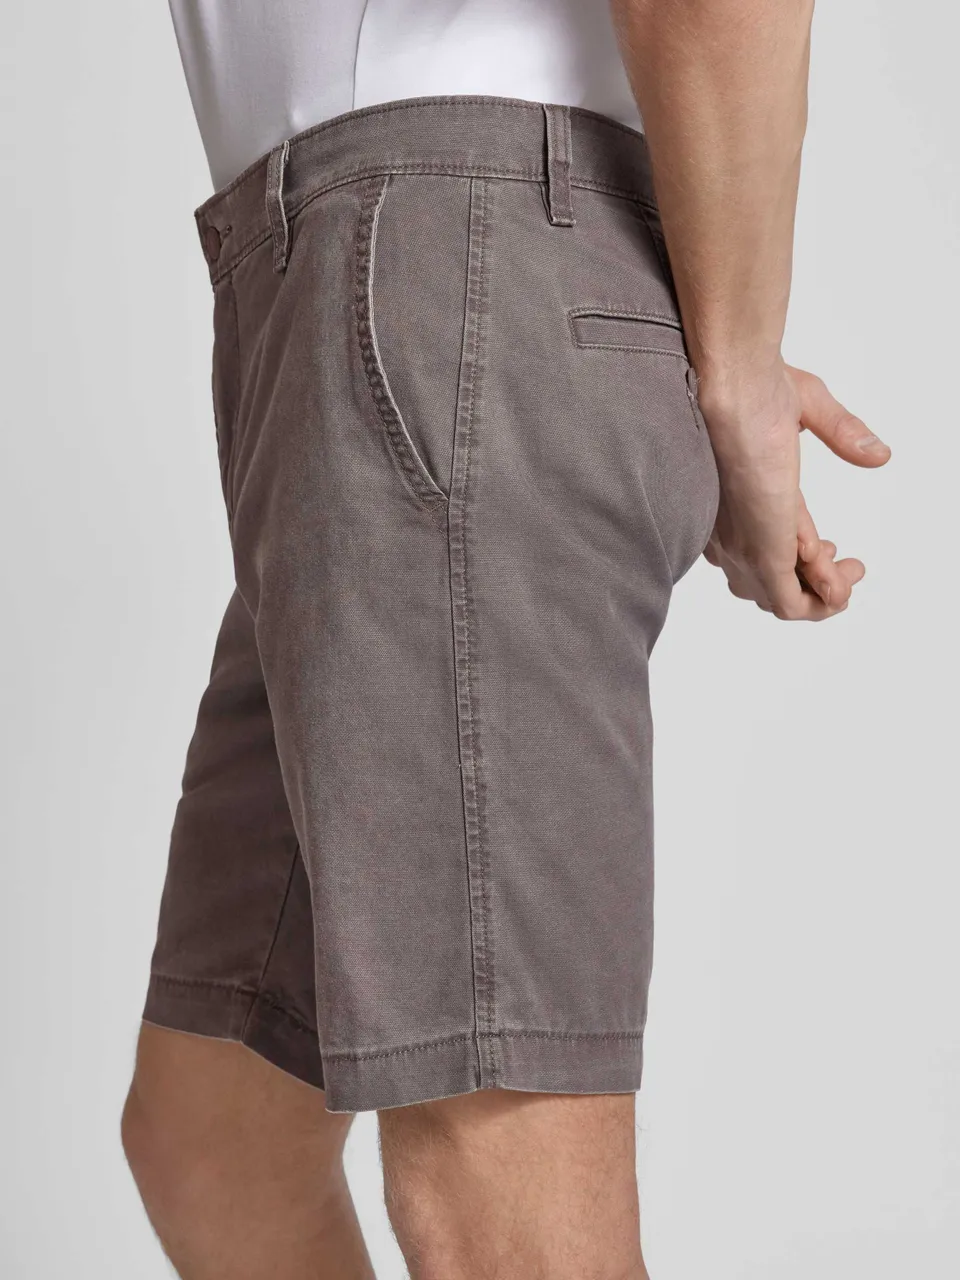 Standard Fit Chino-Shorts mit Eingrifftaschen